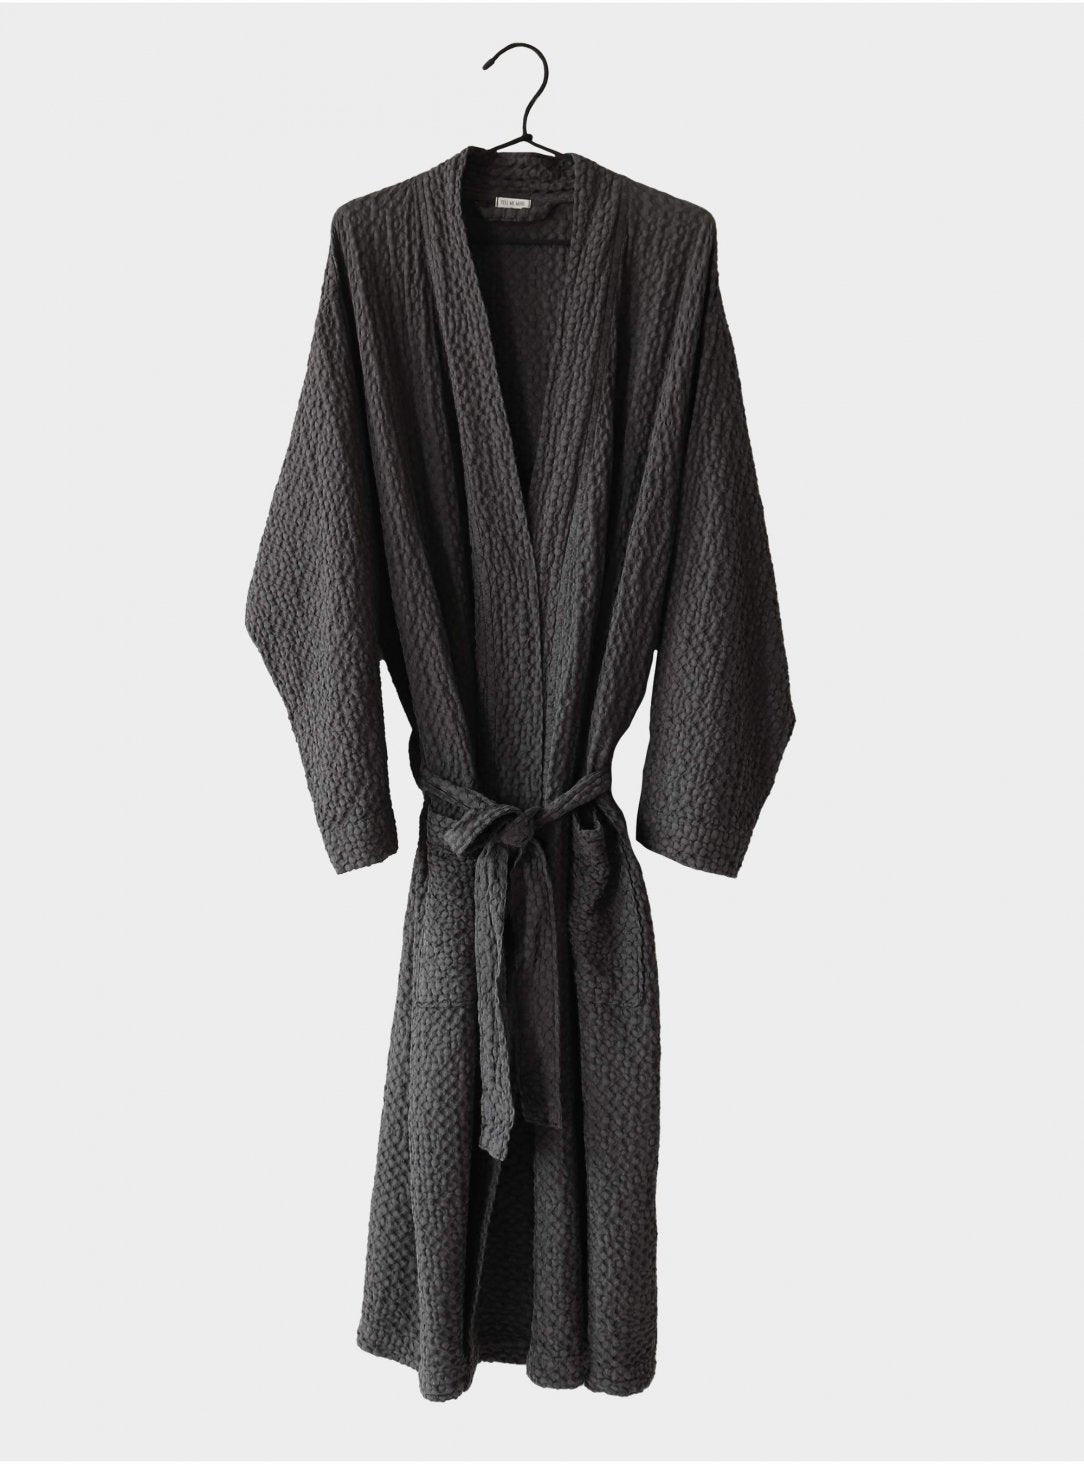 Cotton bathrobe Charcoal L/XL